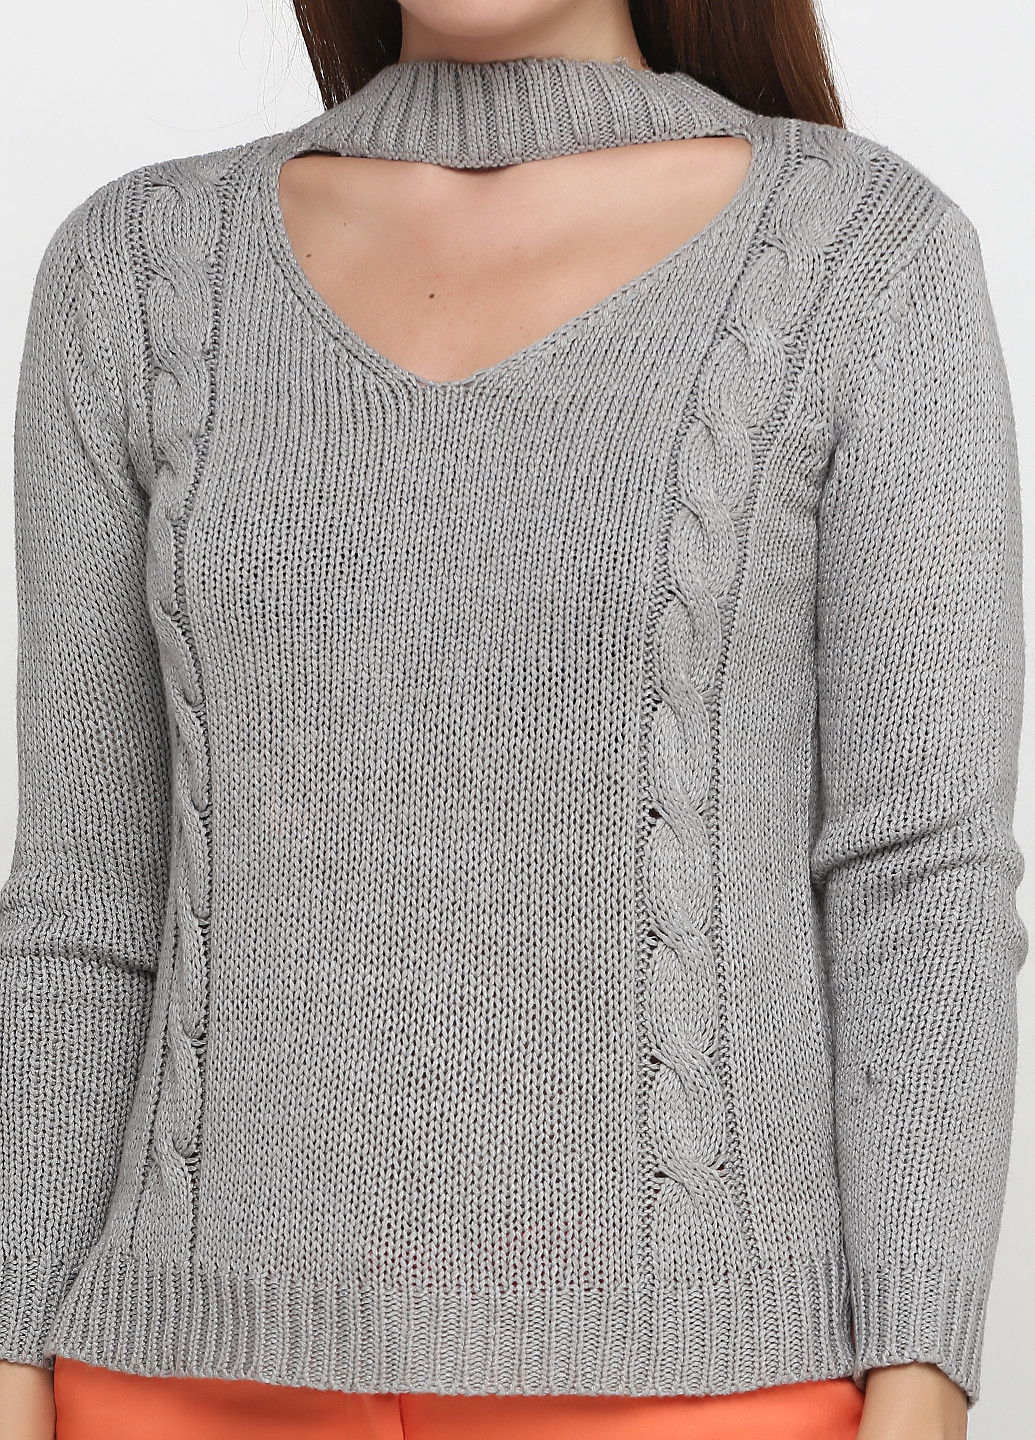 Серый демисезонный пуловер пуловер Alya by Francesca`s